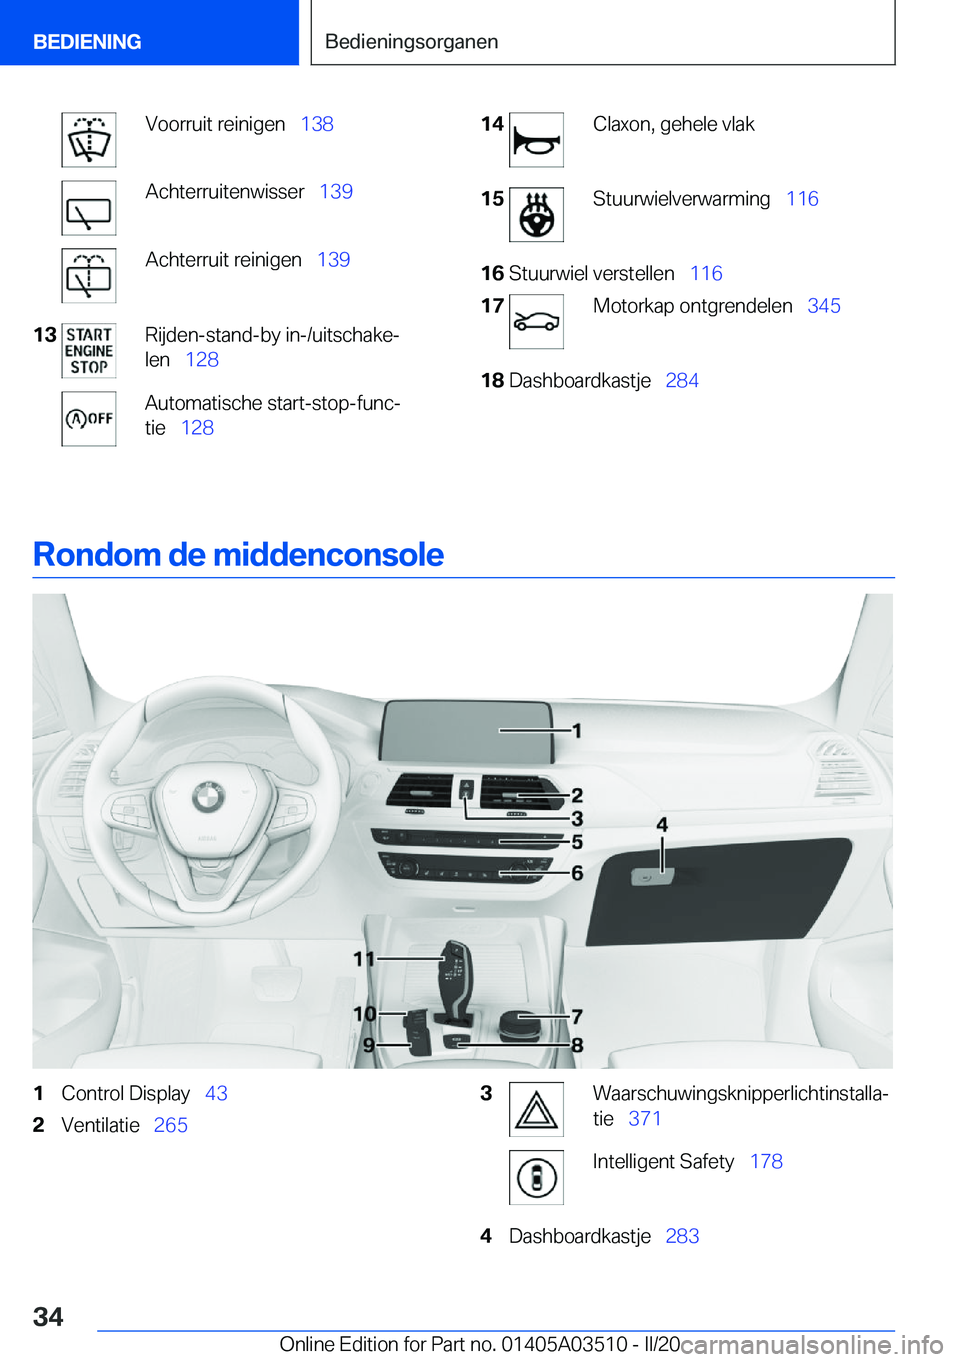 BMW X3 2020  Instructieboekjes (in Dutch) �V�o�o�r�r�u�i�t��r�e�i�n�i�g�e�n\_�1�3�8�A�c�h�t�e�r�r�u�i�t�e�n�w�i�s�s�e�r\_ �1�3�9�A�c�h�t�e�r�r�u�i�t��r�e�i�n�i�g�e�n\_�1�3�9�1�3�R�i�j�d�e�n�-�s�t�a�n�d�-�b�y��i�n�-�/�u�i�t�s�c�h�a�k�